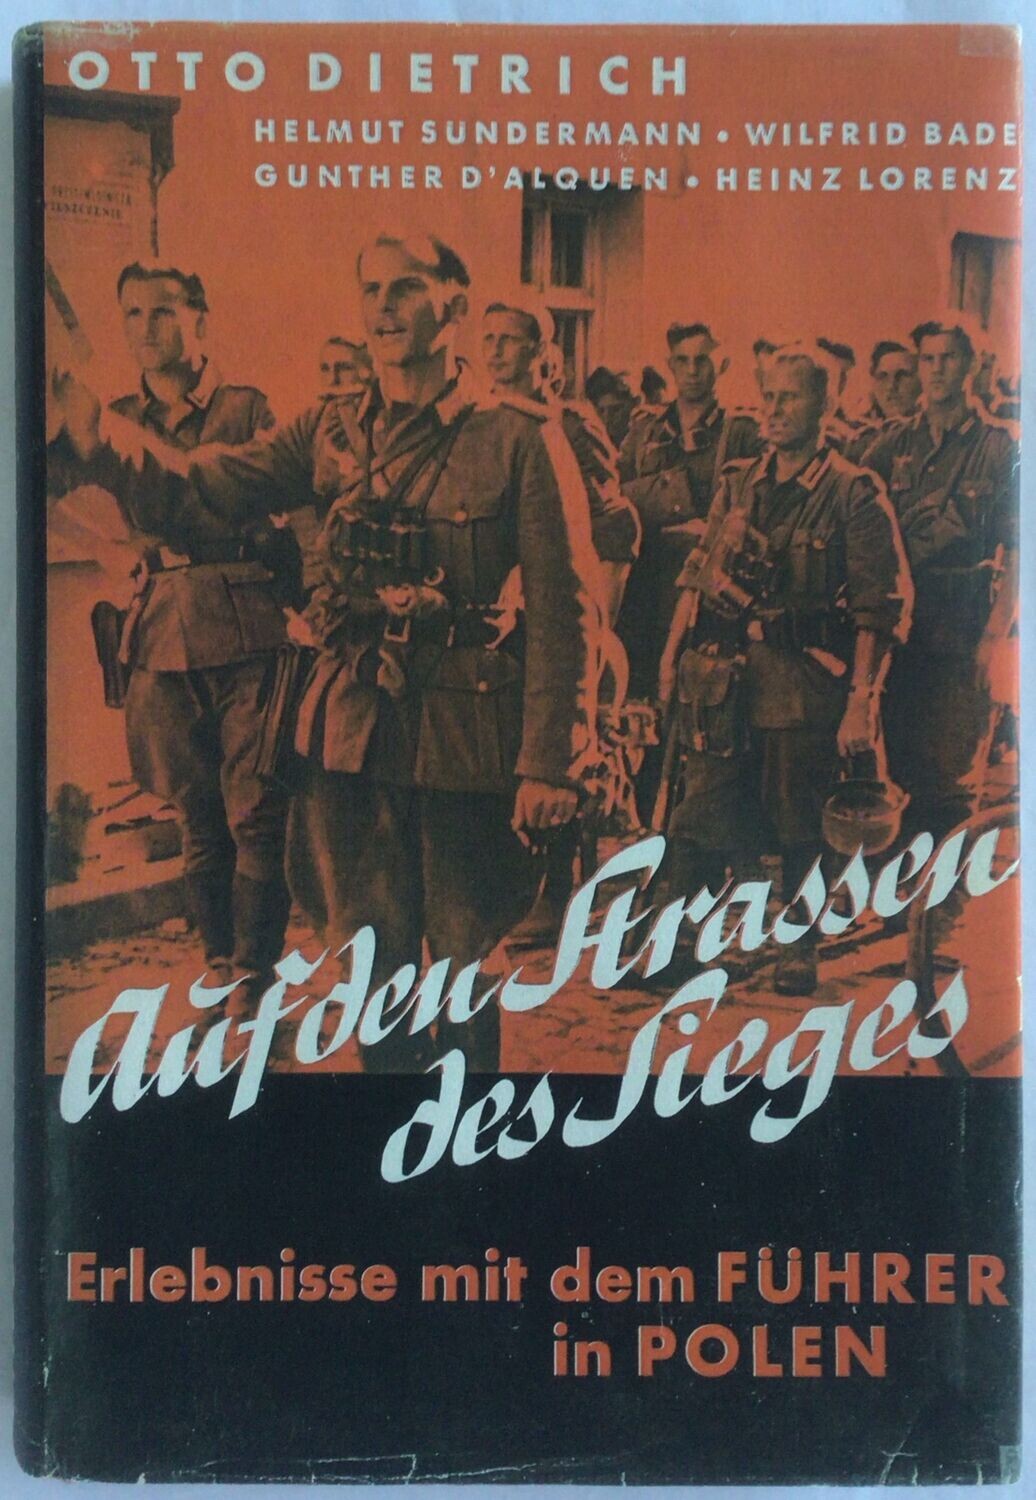 Dietrich: Auf den Straßen des Sieges - Ganzleinenausgabe aus dem Jahr 1940 (3. Auflage) mit Schutzumschlag (Kopie)